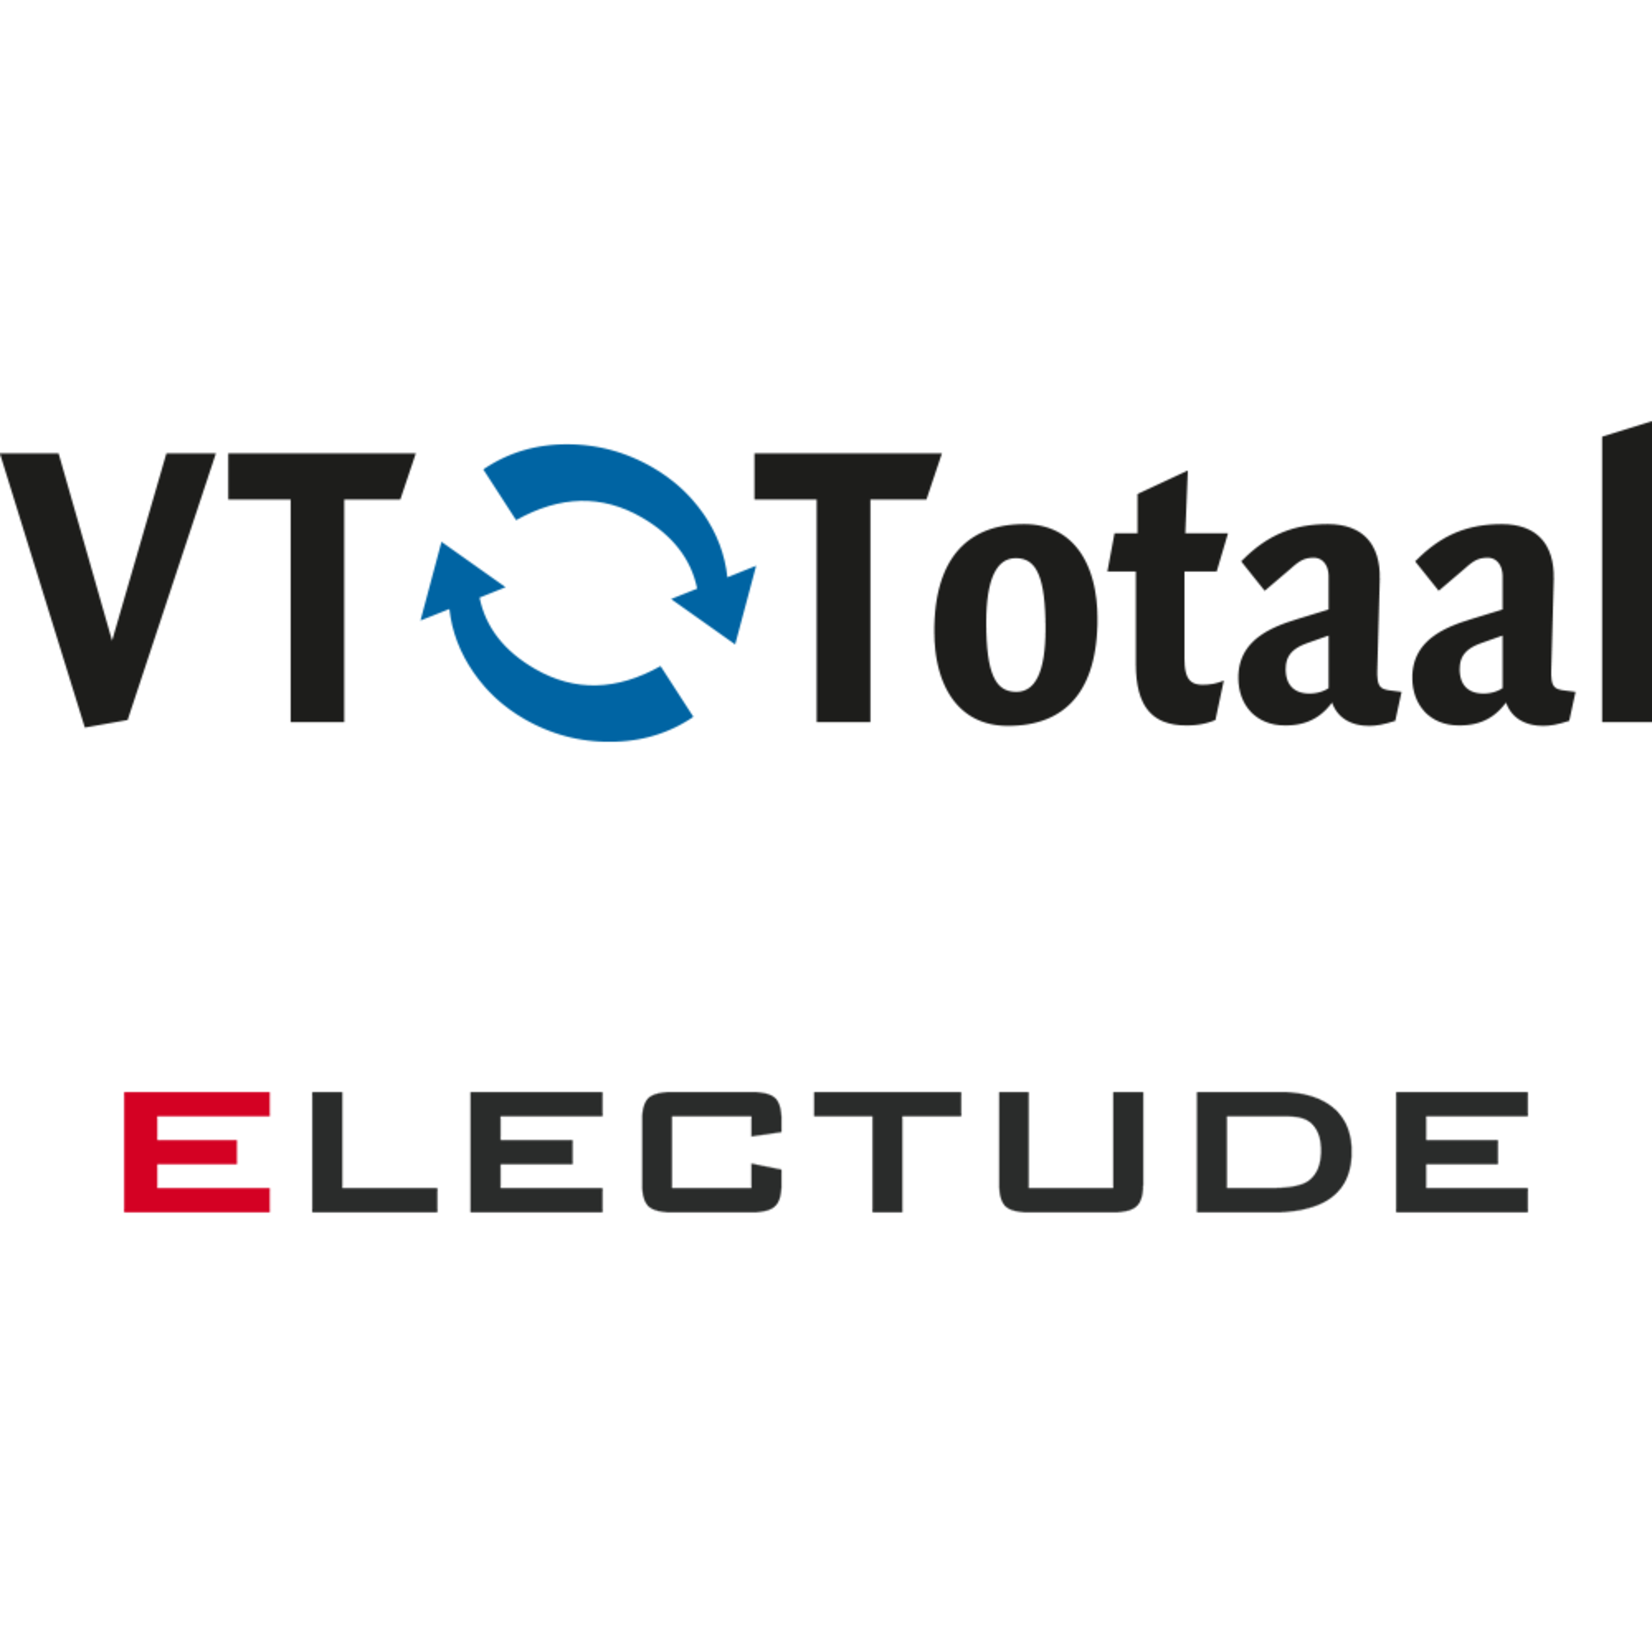 Licentie Electude - combivoucher: vmbo Automotive + MK Autotechniek, VT-Totaal 3 maanden